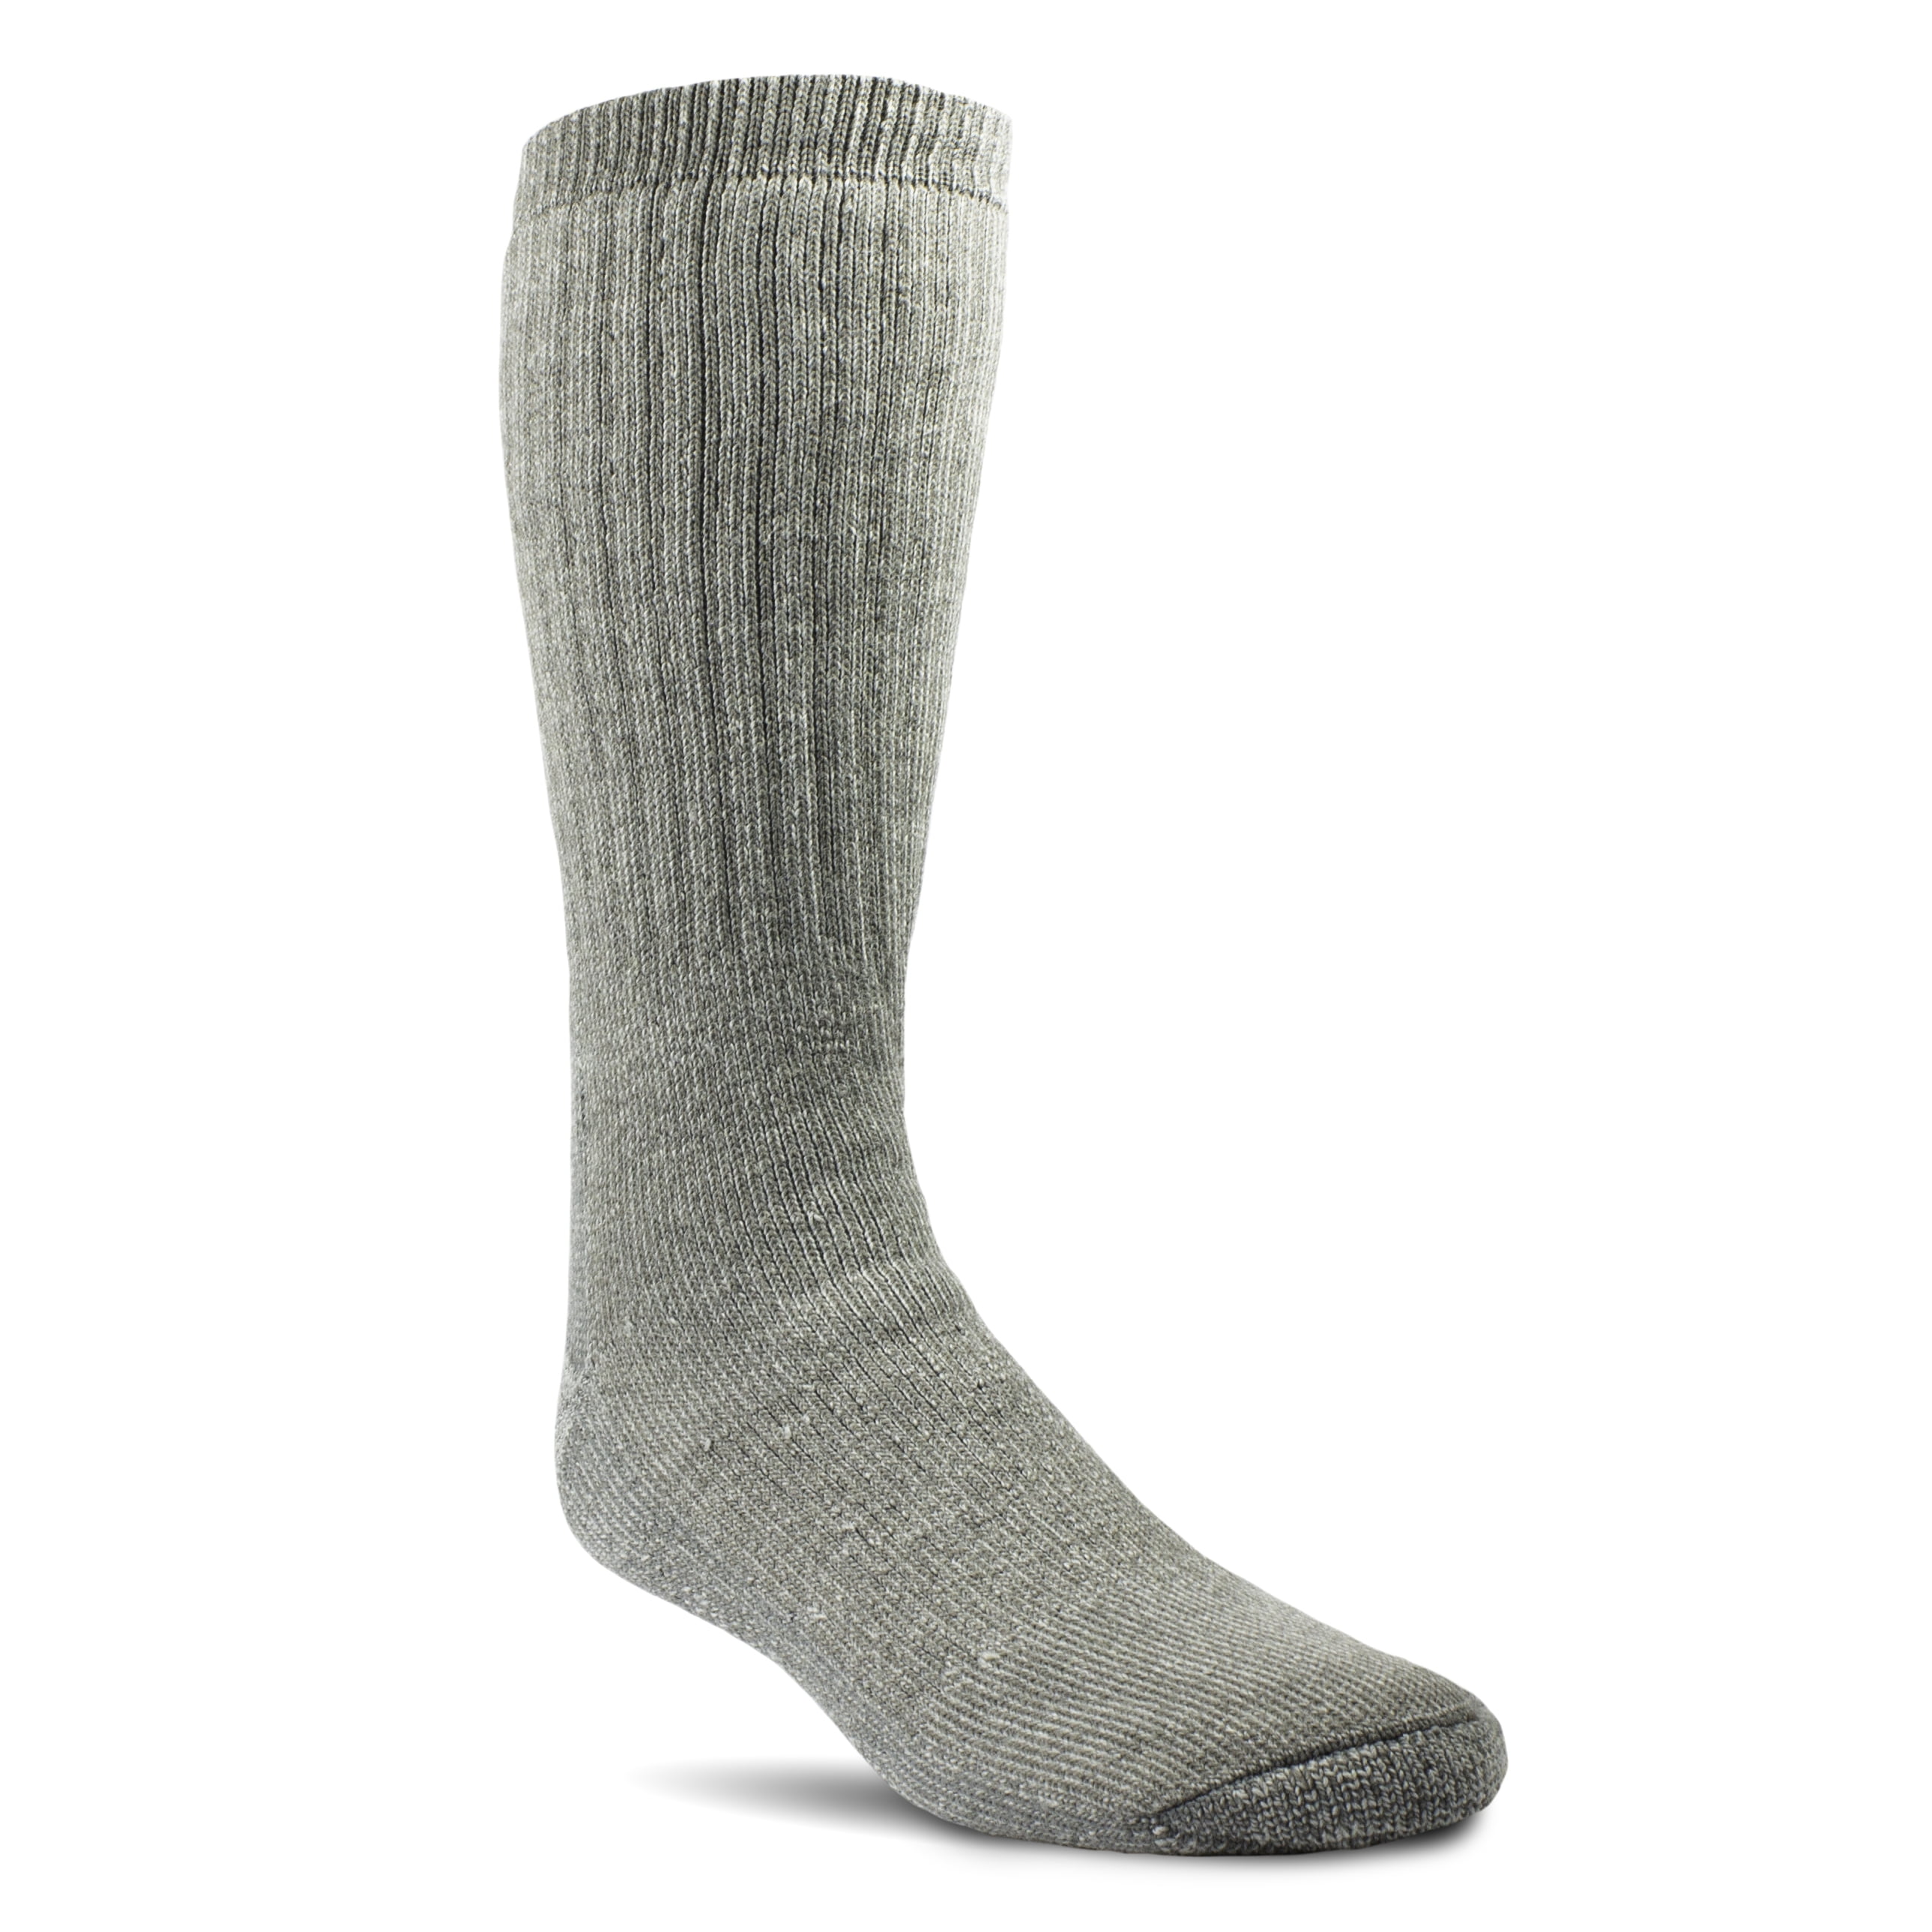 Realtree Mens Cushioned Cotton Thermal Socks Gray/Black 